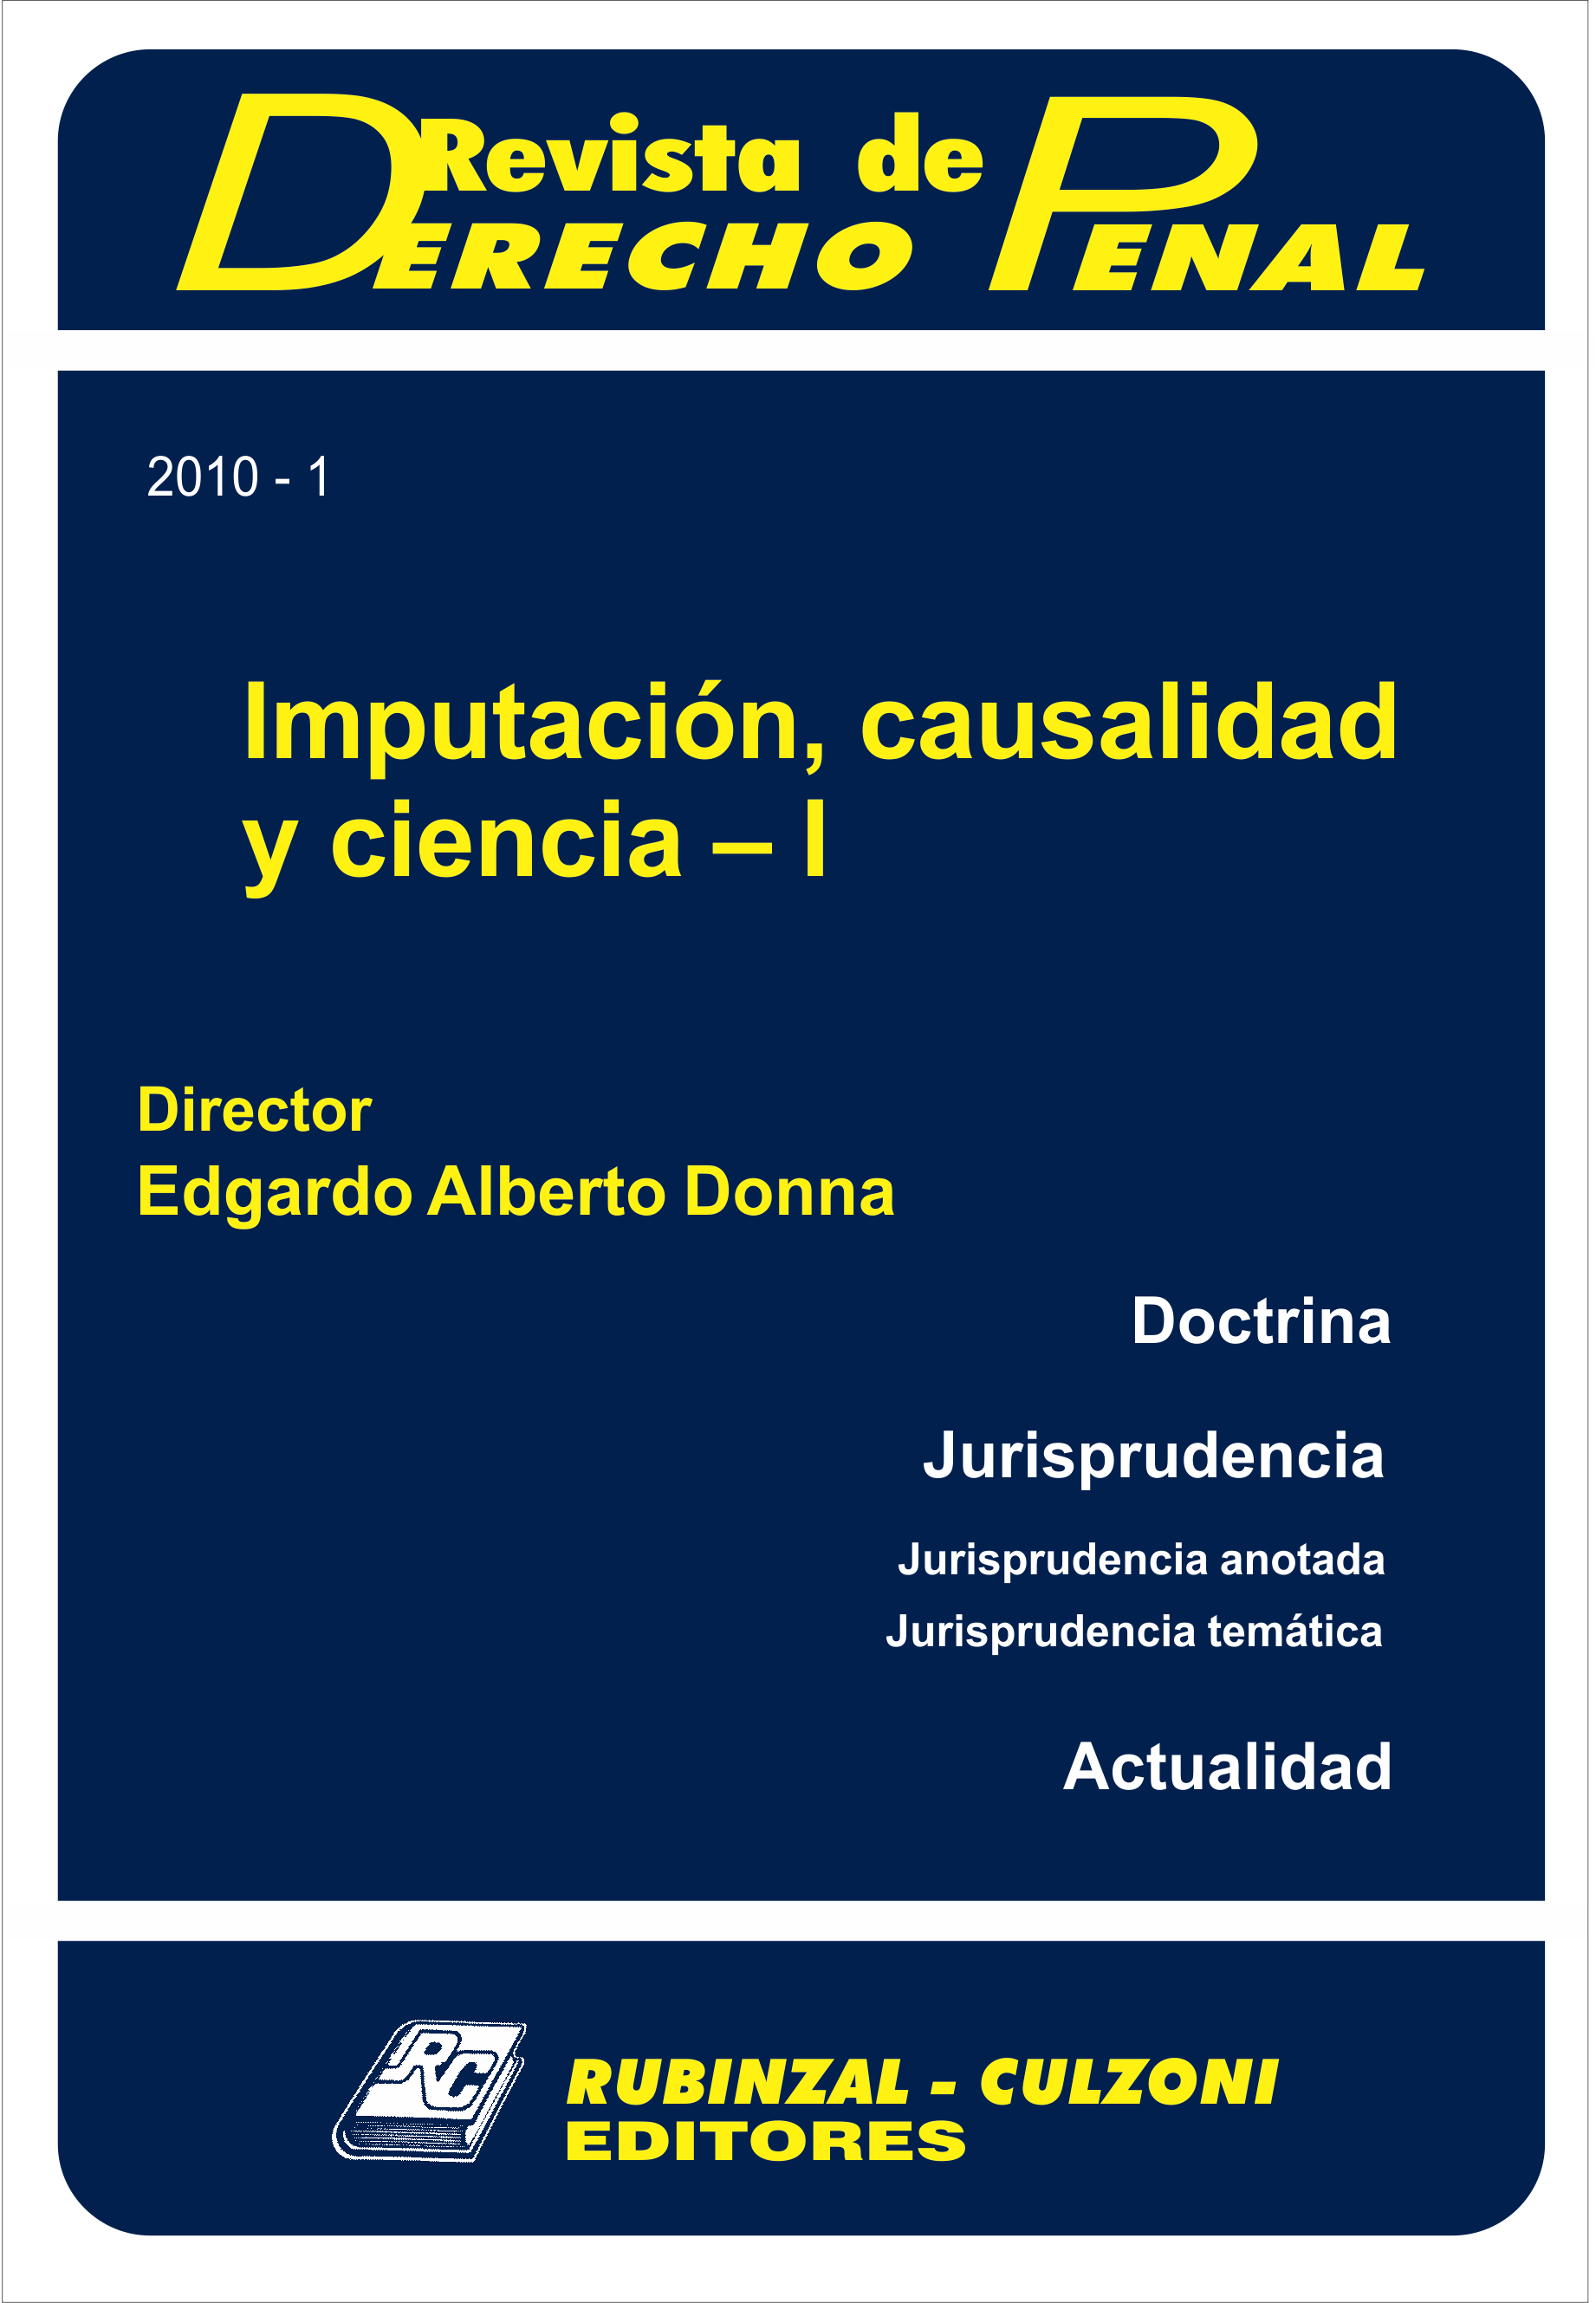 Revista de Derecho Penal - Imputación, causalidad y ciencia - I.